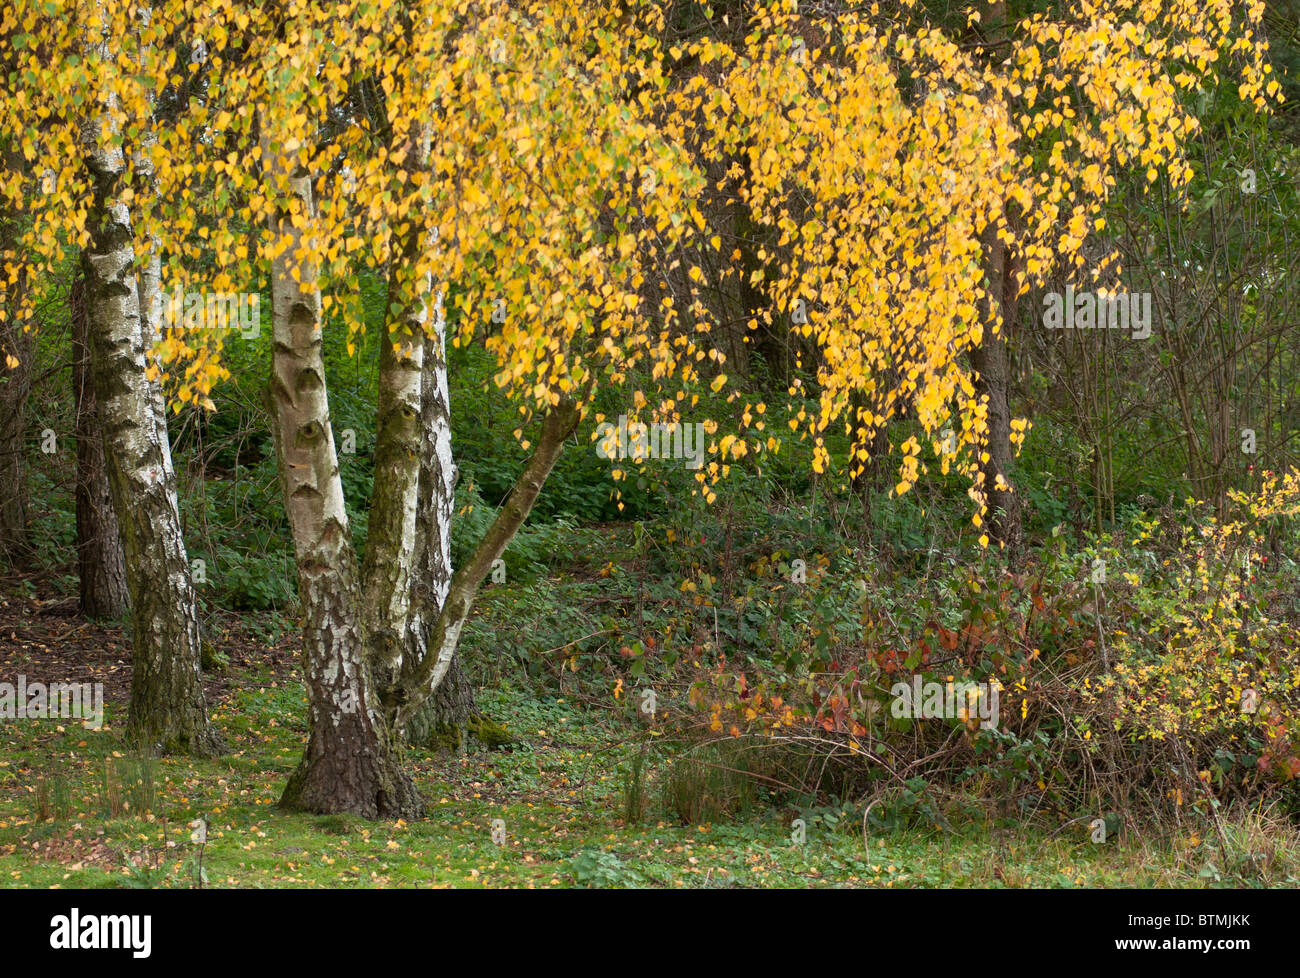 Bouleau commun, le bouleau verruqueux, bouleau blanc (Betula pendula), au Royaume-Uni, au cours Worcs, automne Banque D'Images